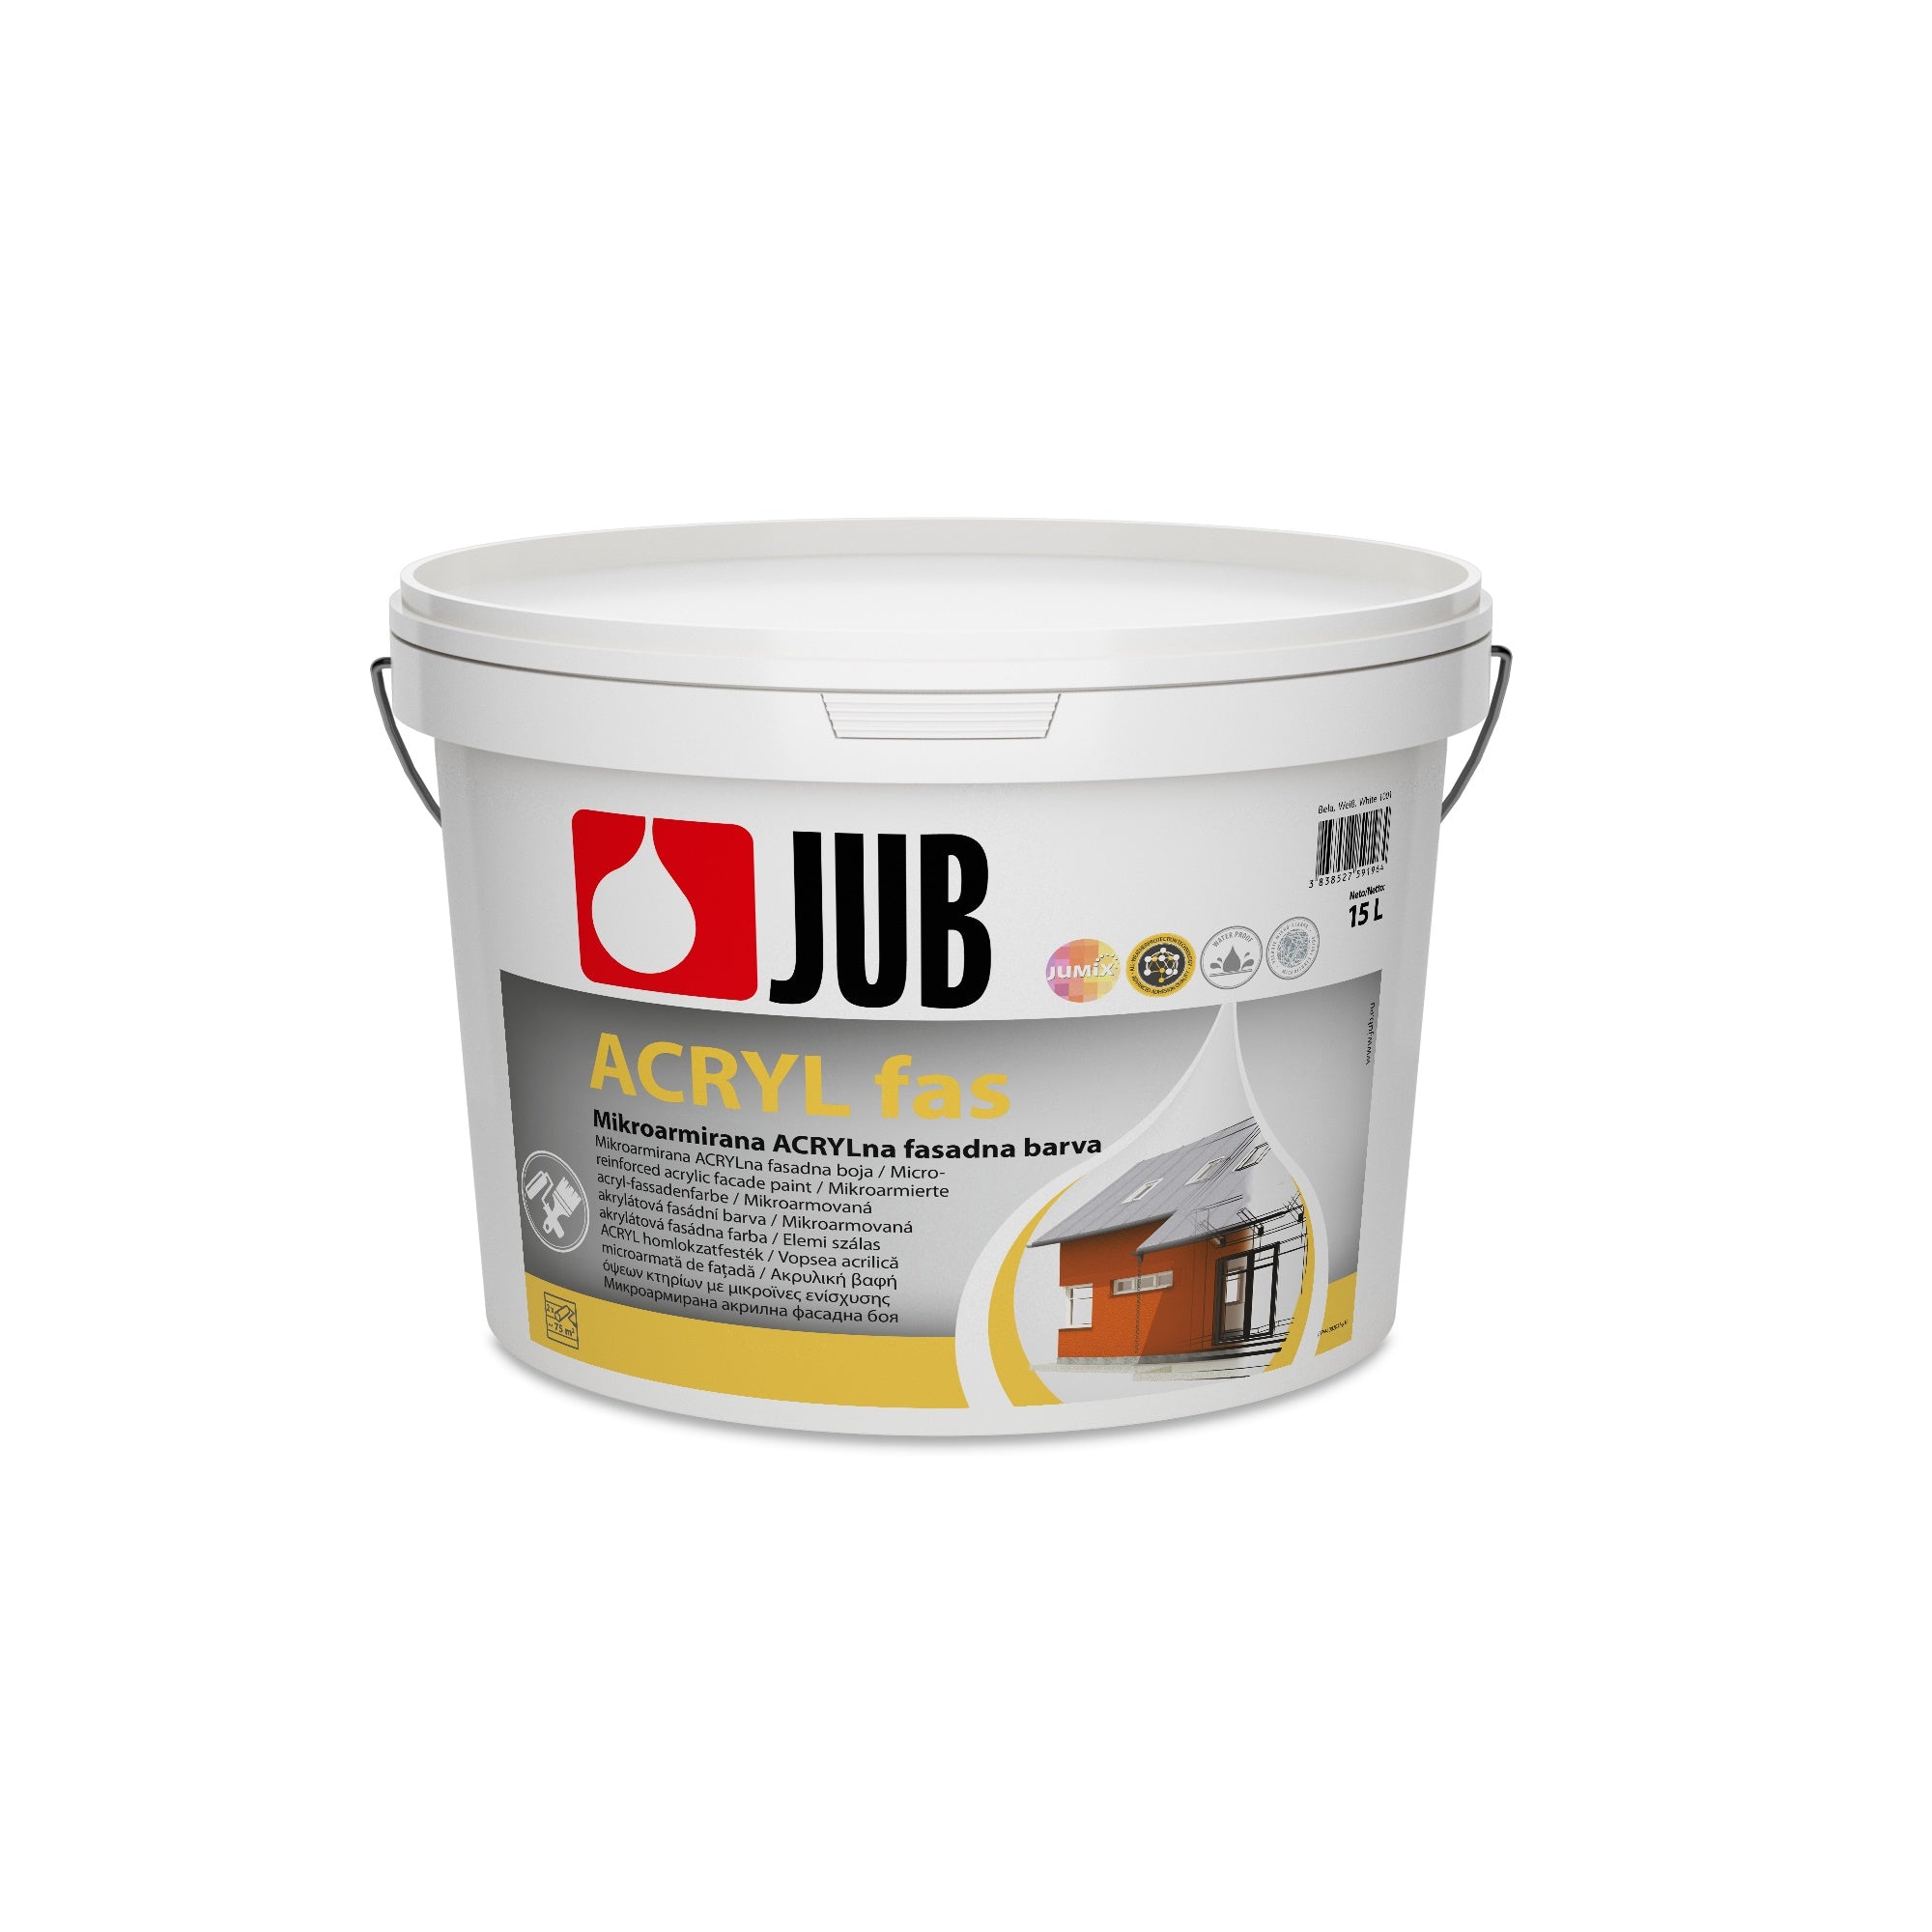 JUB Acryl fas mikroarmovaná akrylátová fasádní barva 5 l